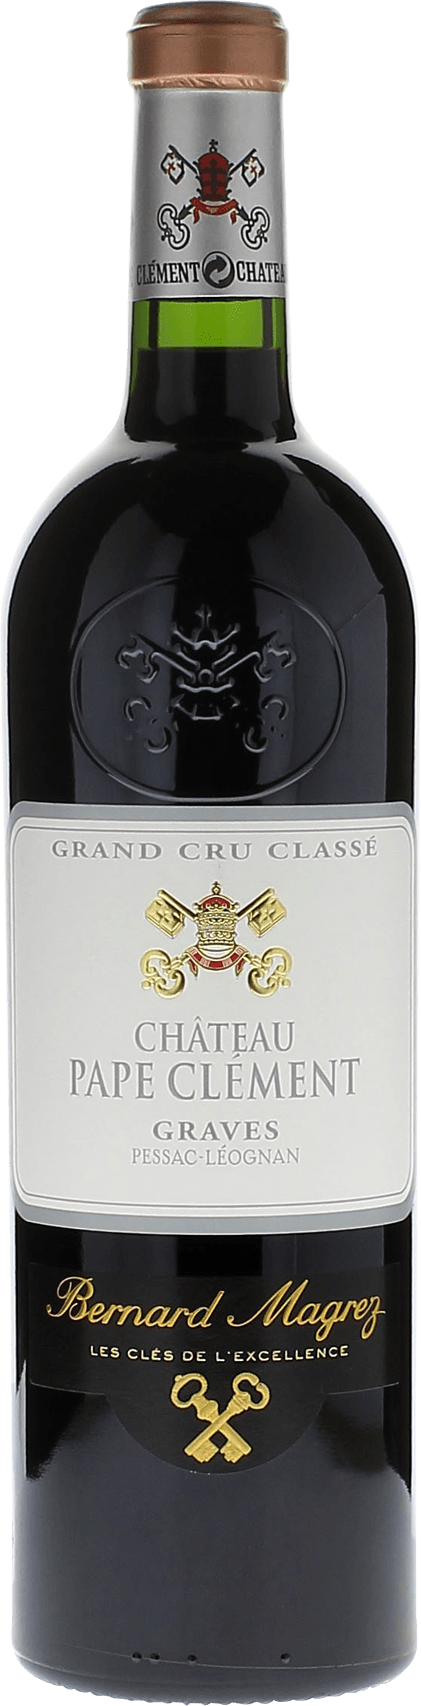 Pape clement rouge 1996 Grand Cru Class Pessac-Lognan, Bordeaux rouge